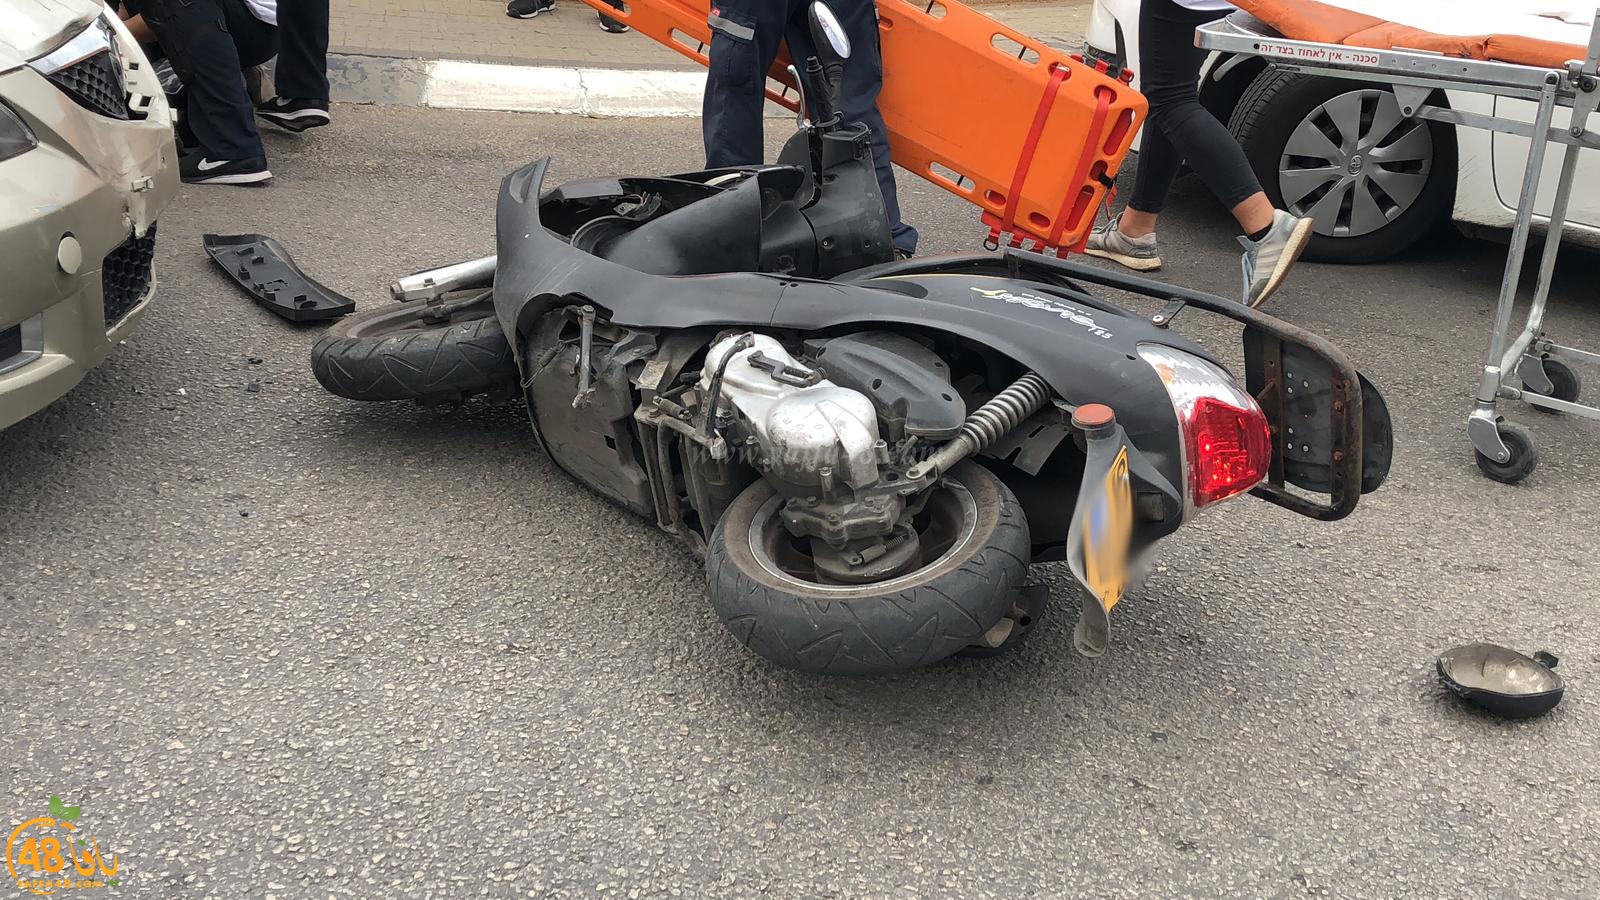  بالصور: اصابة متوسطة لراكب دراجة نارية بحادث طرق في يافا